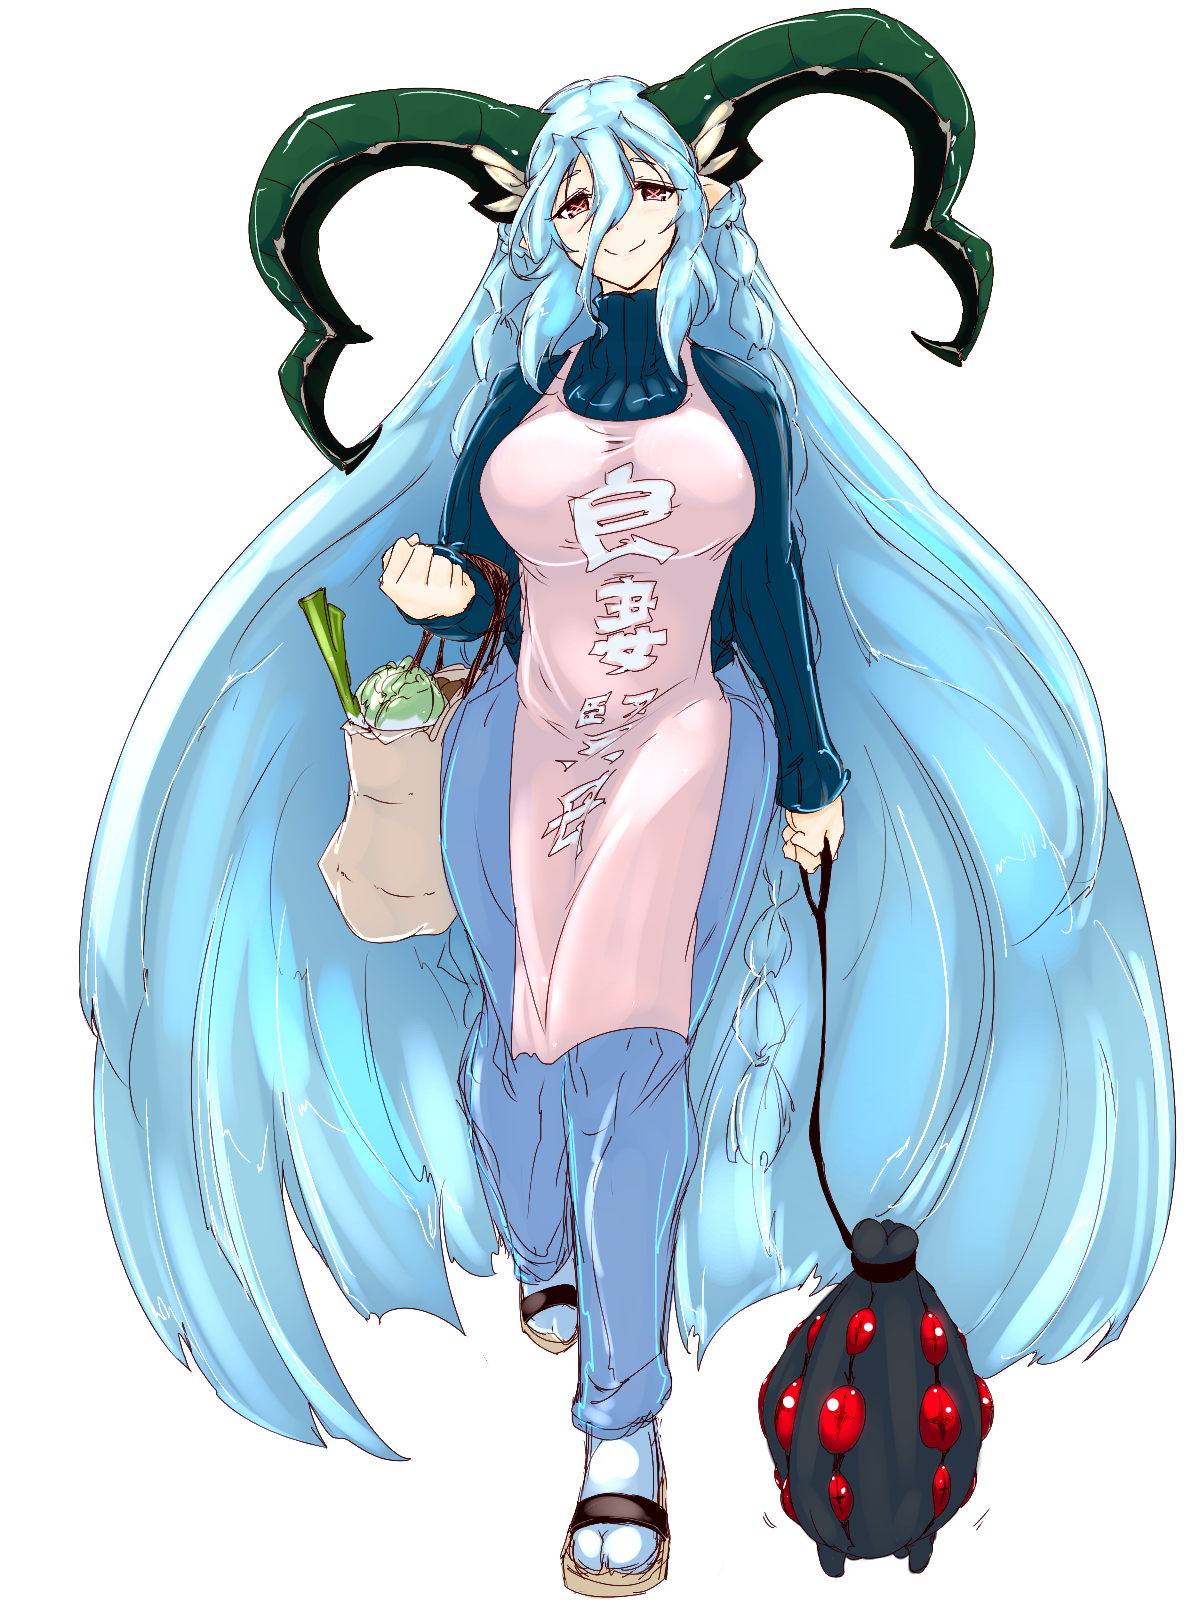 Fate Series FGO Fate Grand Order Apron Horns Monster Girl Anime Girls Braided Hair Alternate Costume 1200x1600